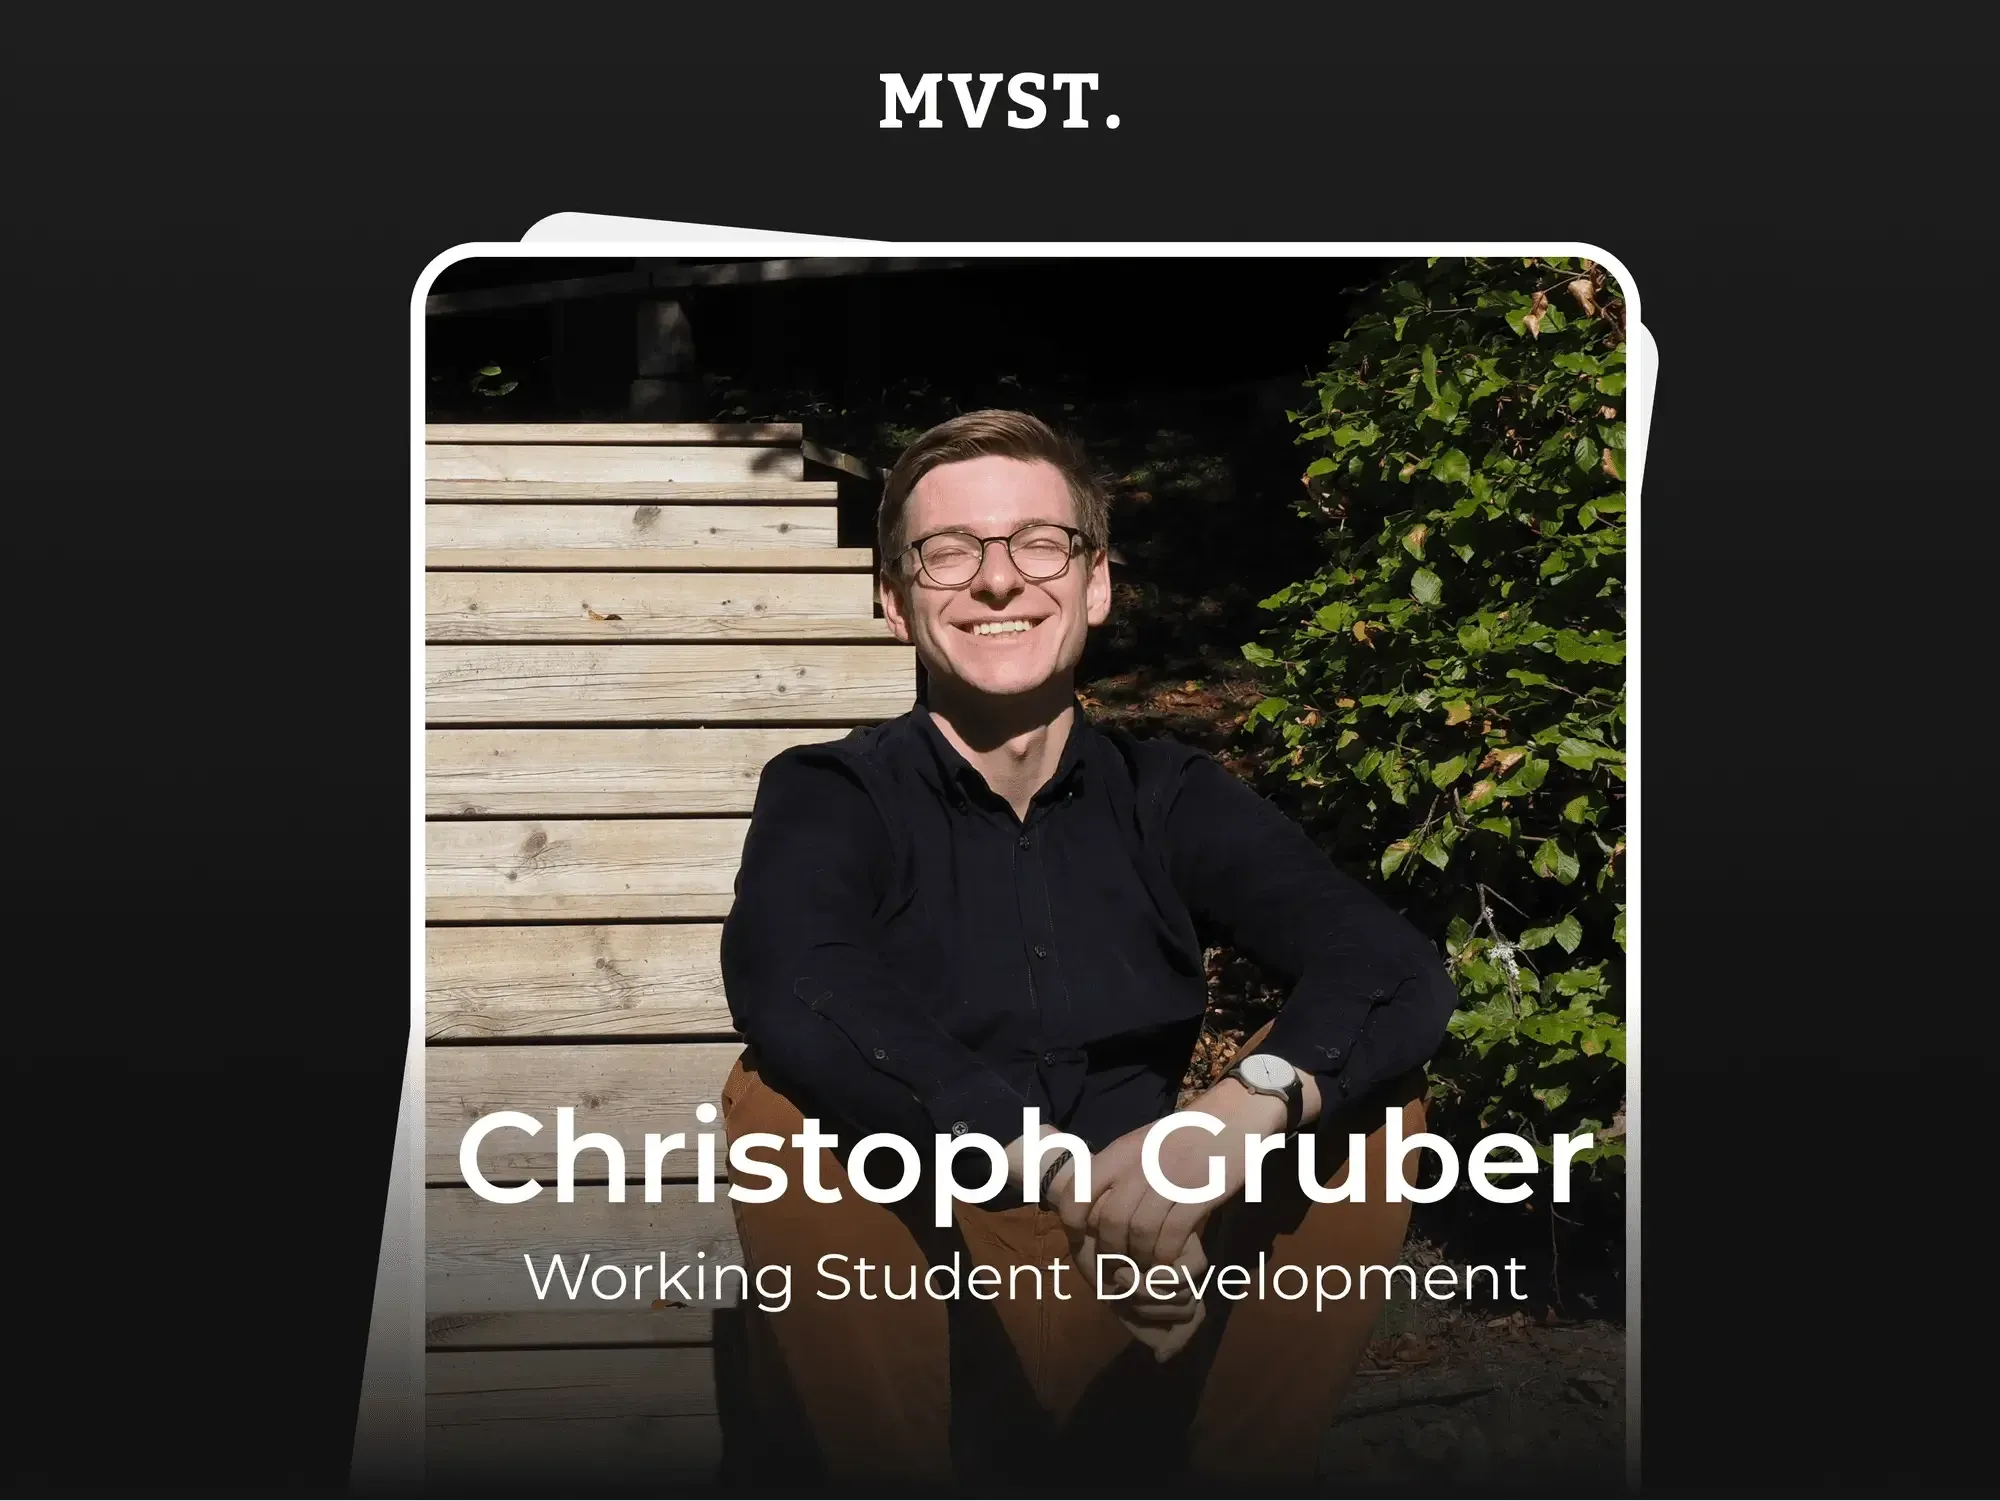 Willkommen bei MVST, Christoph!